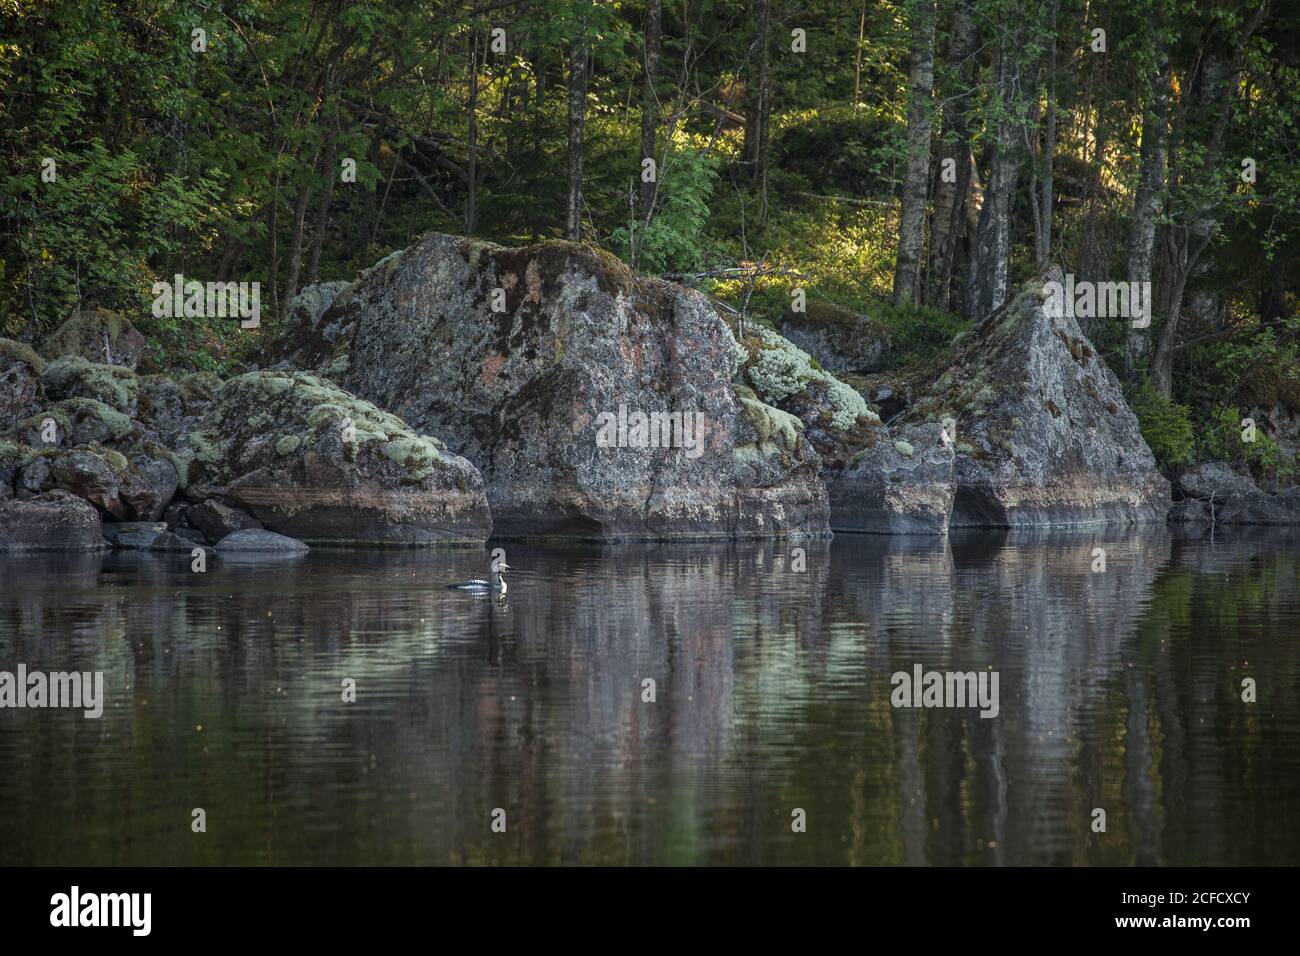 il loon dalla gola nera (Gavia arctica) nuota vicino alla riva del lago, in Finlandia Foto Stock